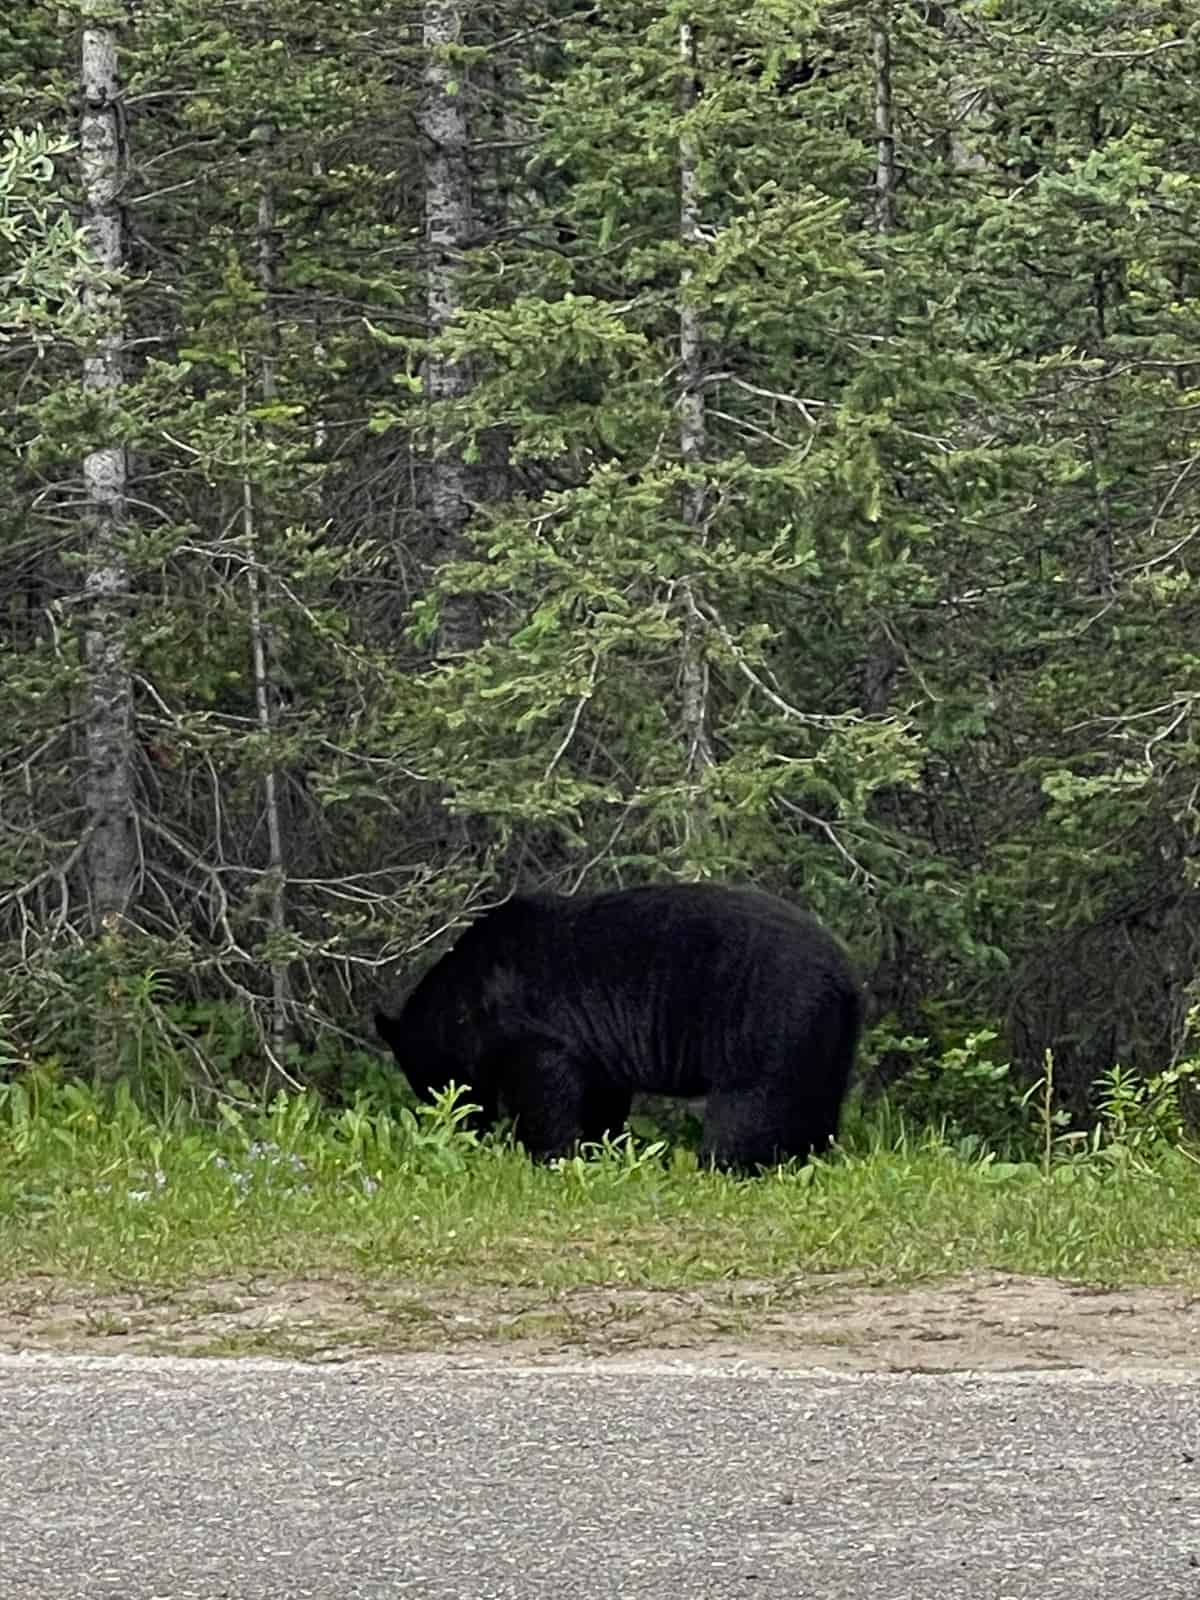 A black bear alongside the road.